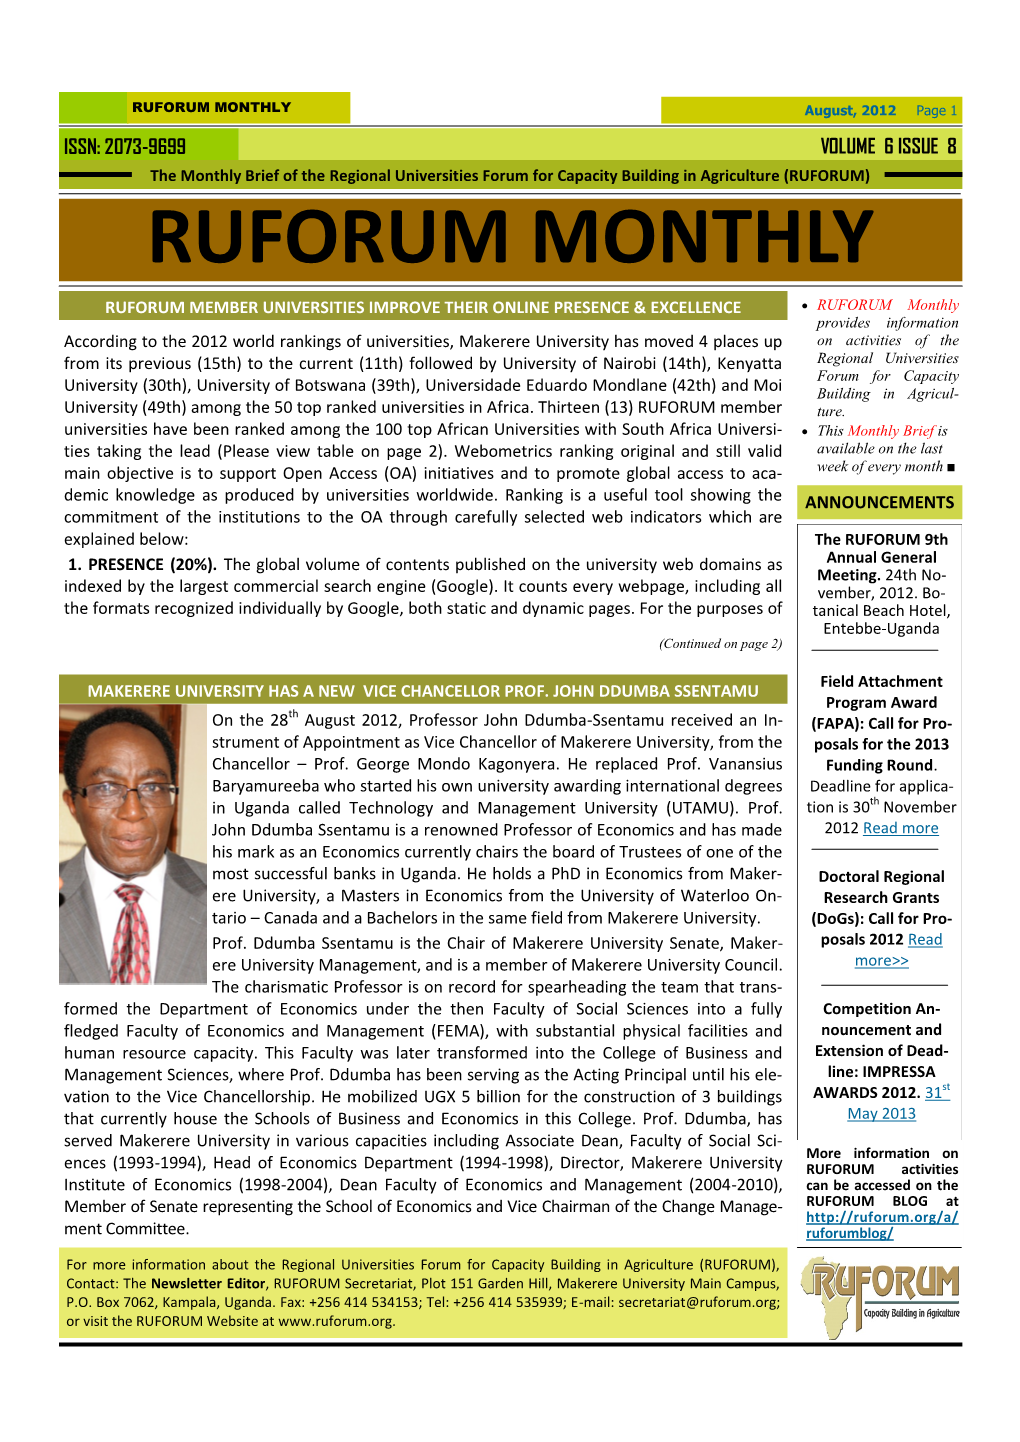 RUFORUM Monthly Newsletter August, 2012.Pdf